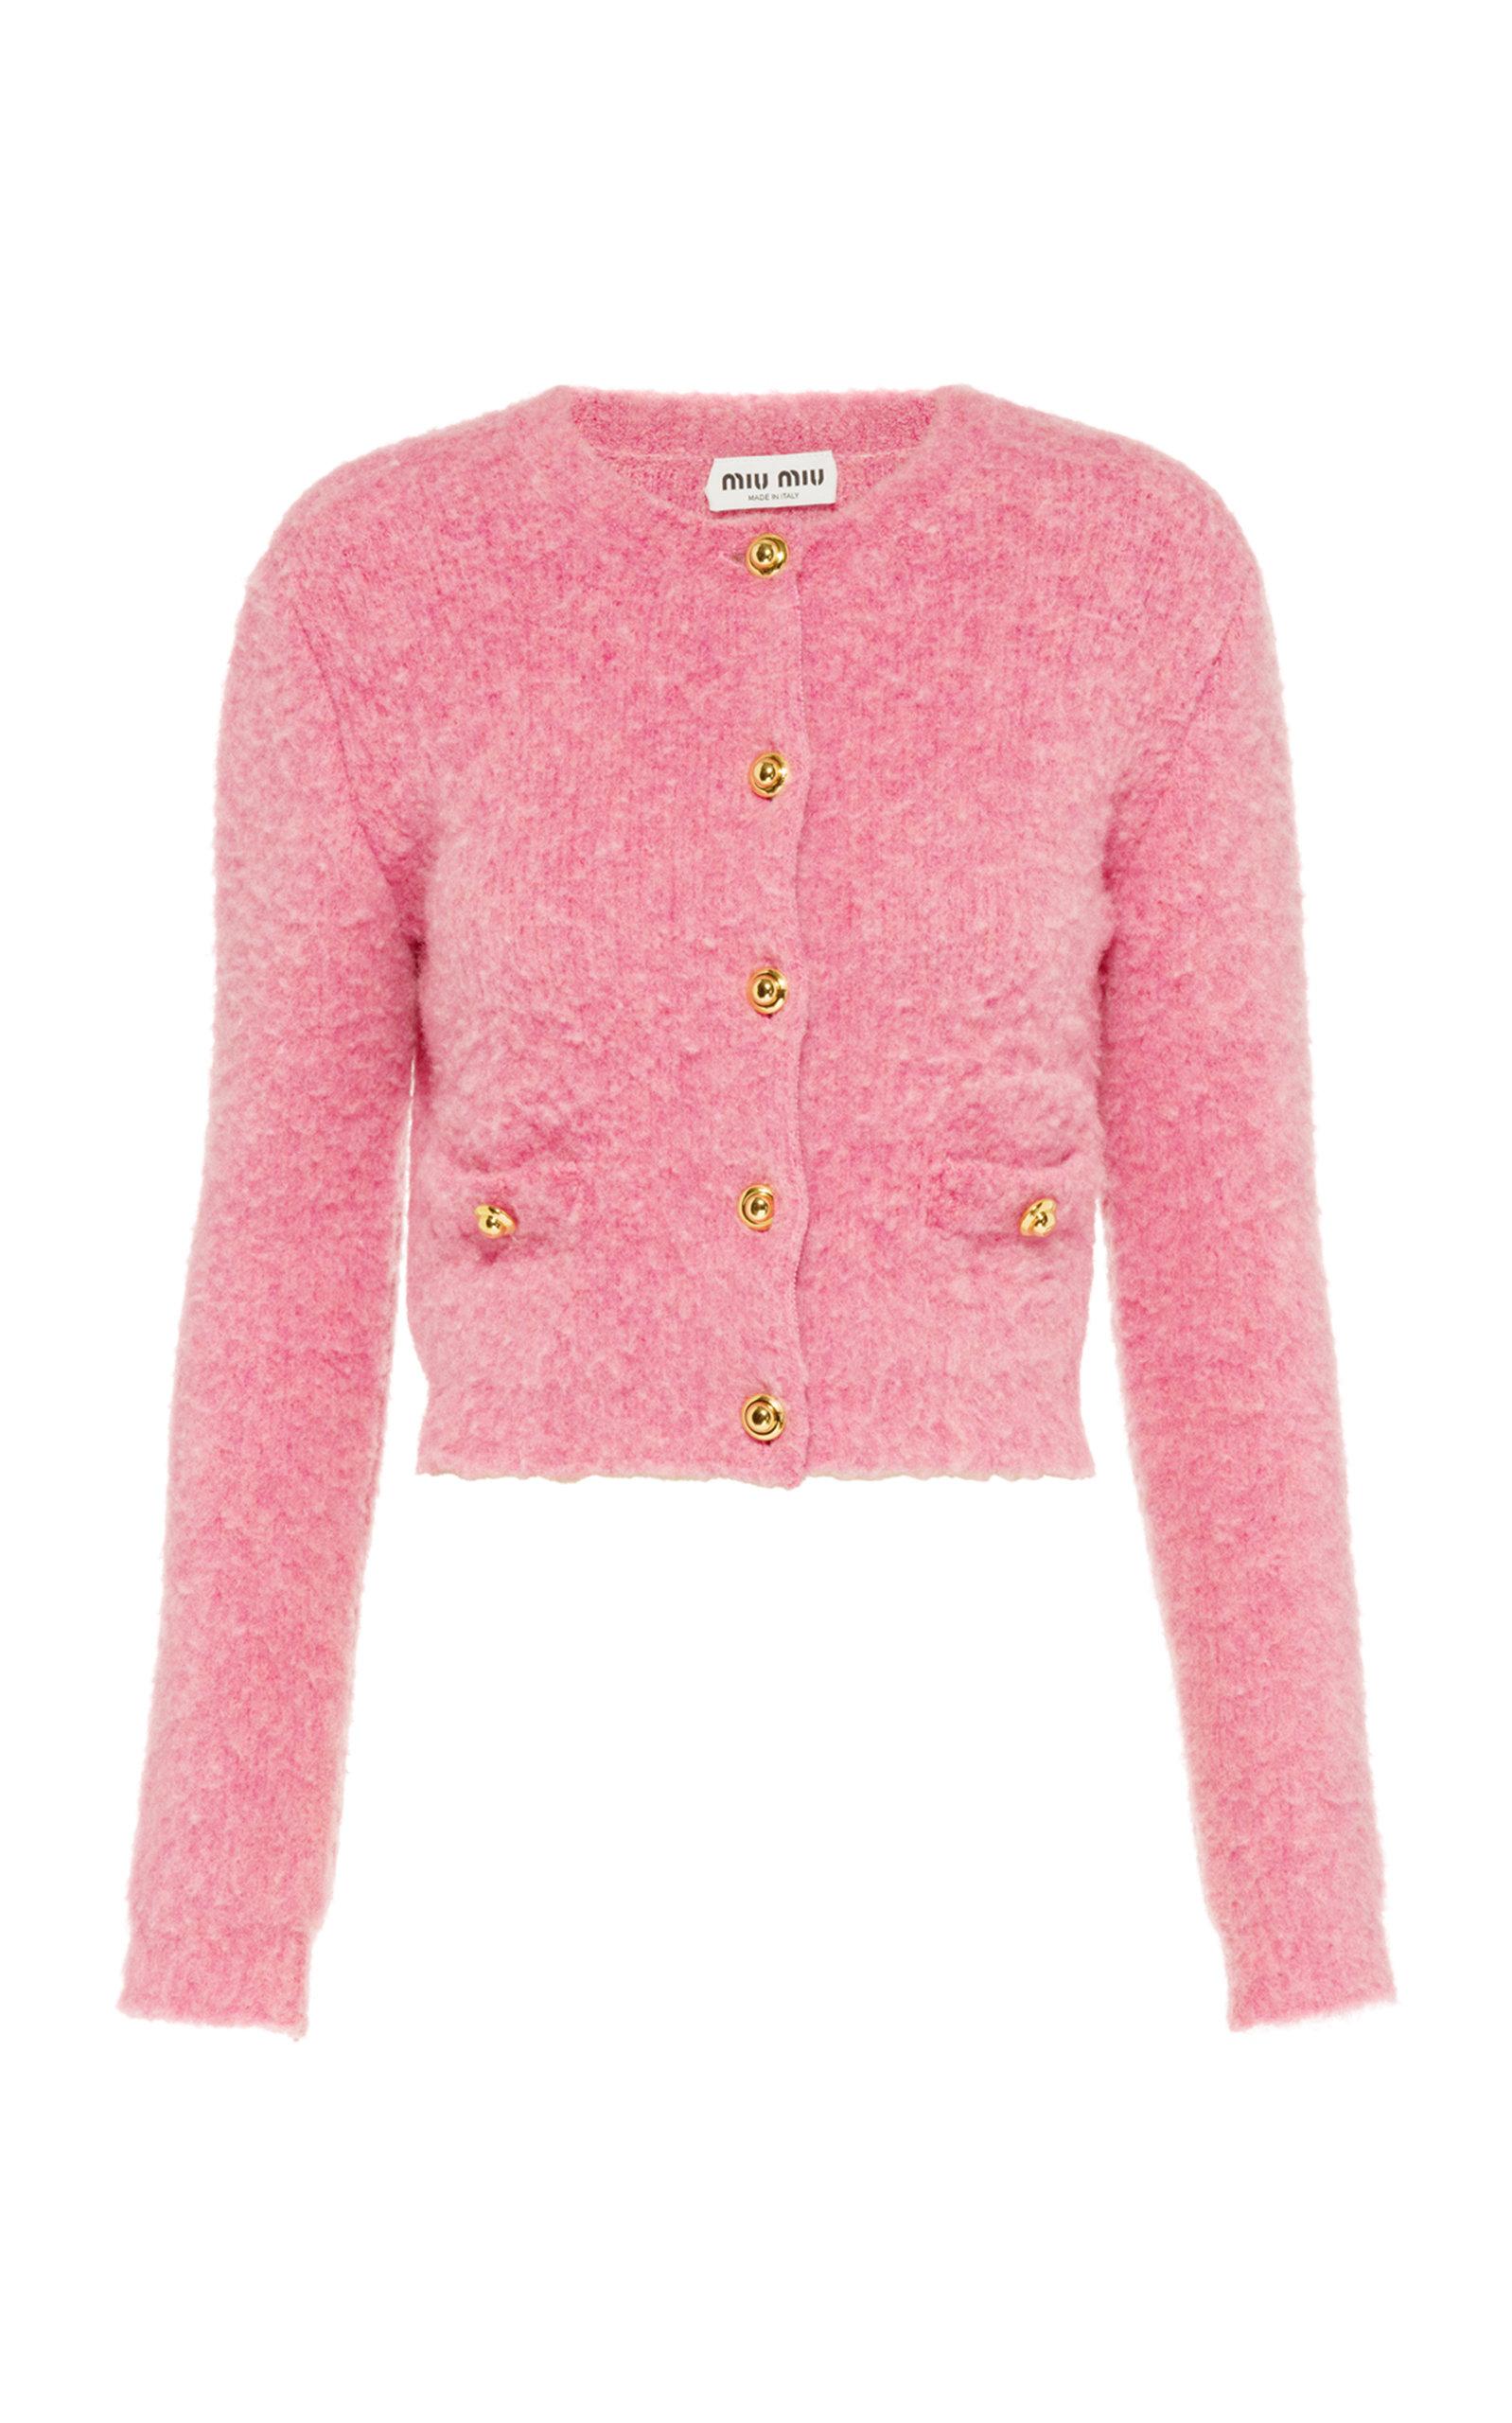 Miu Miu Wool Boucle Cropped Cardigan in Pink | Lyst